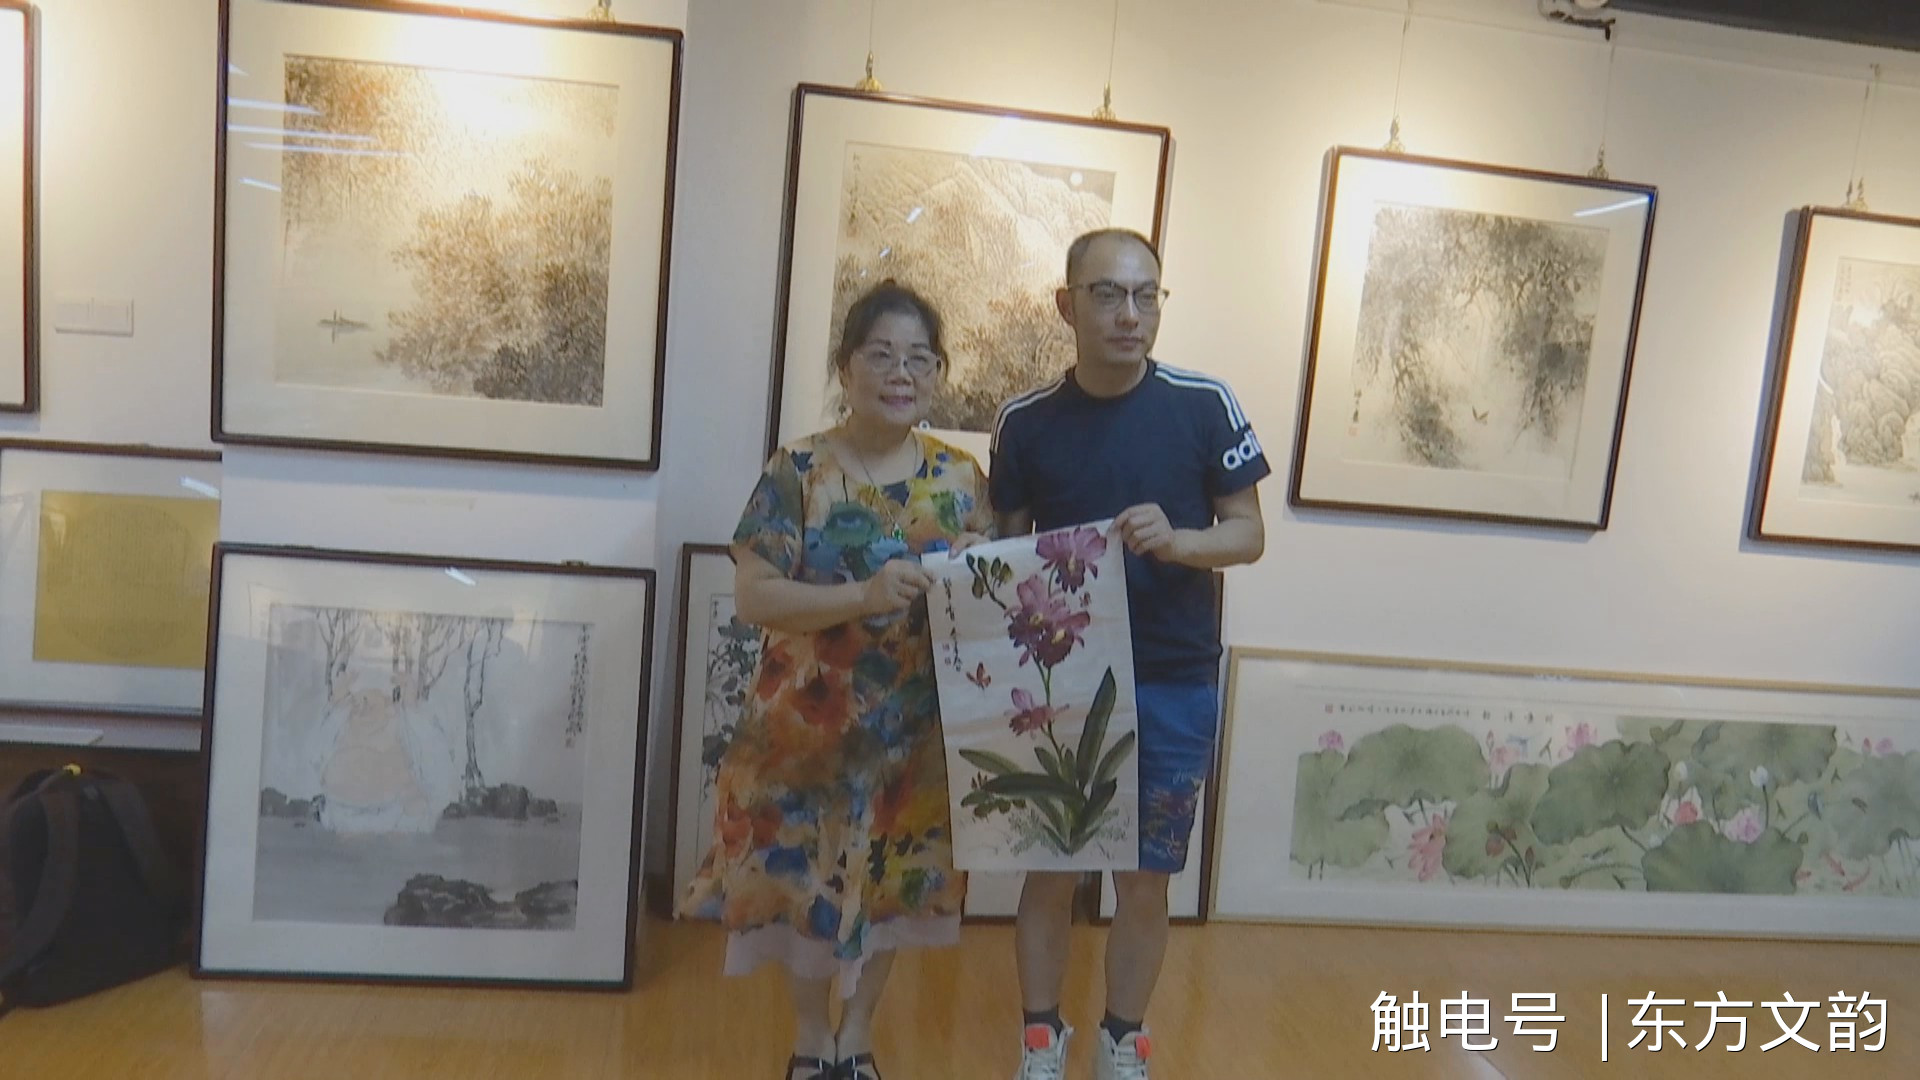  台湾艺术家赠作品给铜陵新媒体人员 